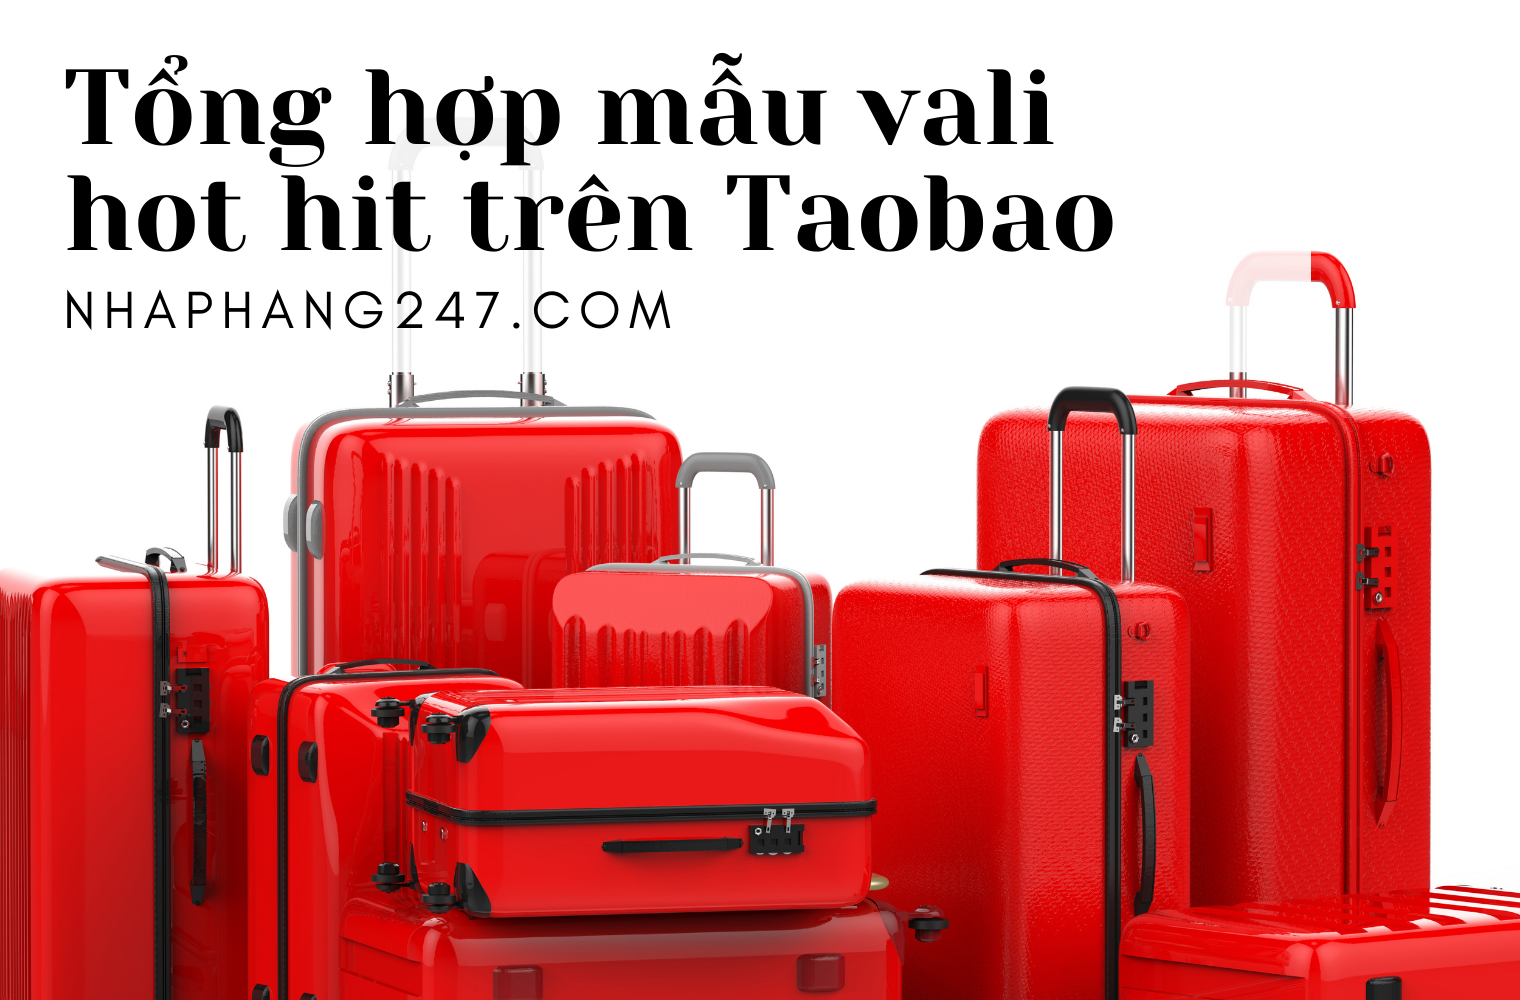 Tổng hợp các link bán vali HOT HIT của Taobao